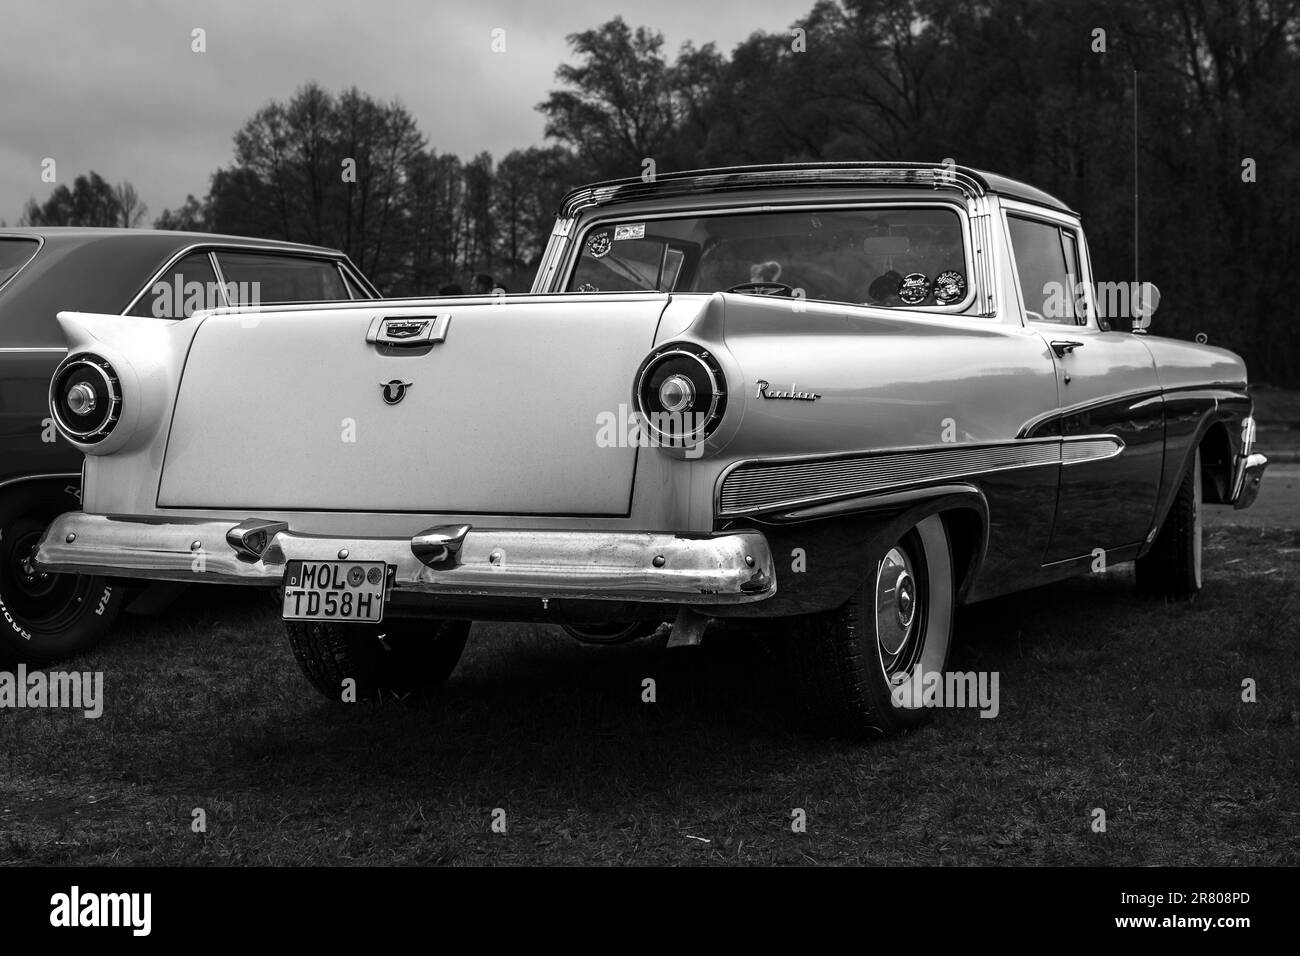 FINOWFURT, ALLEMAGNE - 06 MAI 2023 : le coupé utilitaire/pick-up Ford Ranchero, 1958. Vue arrière. Noir et blanc. Fête de la course 2023. Banque D'Images